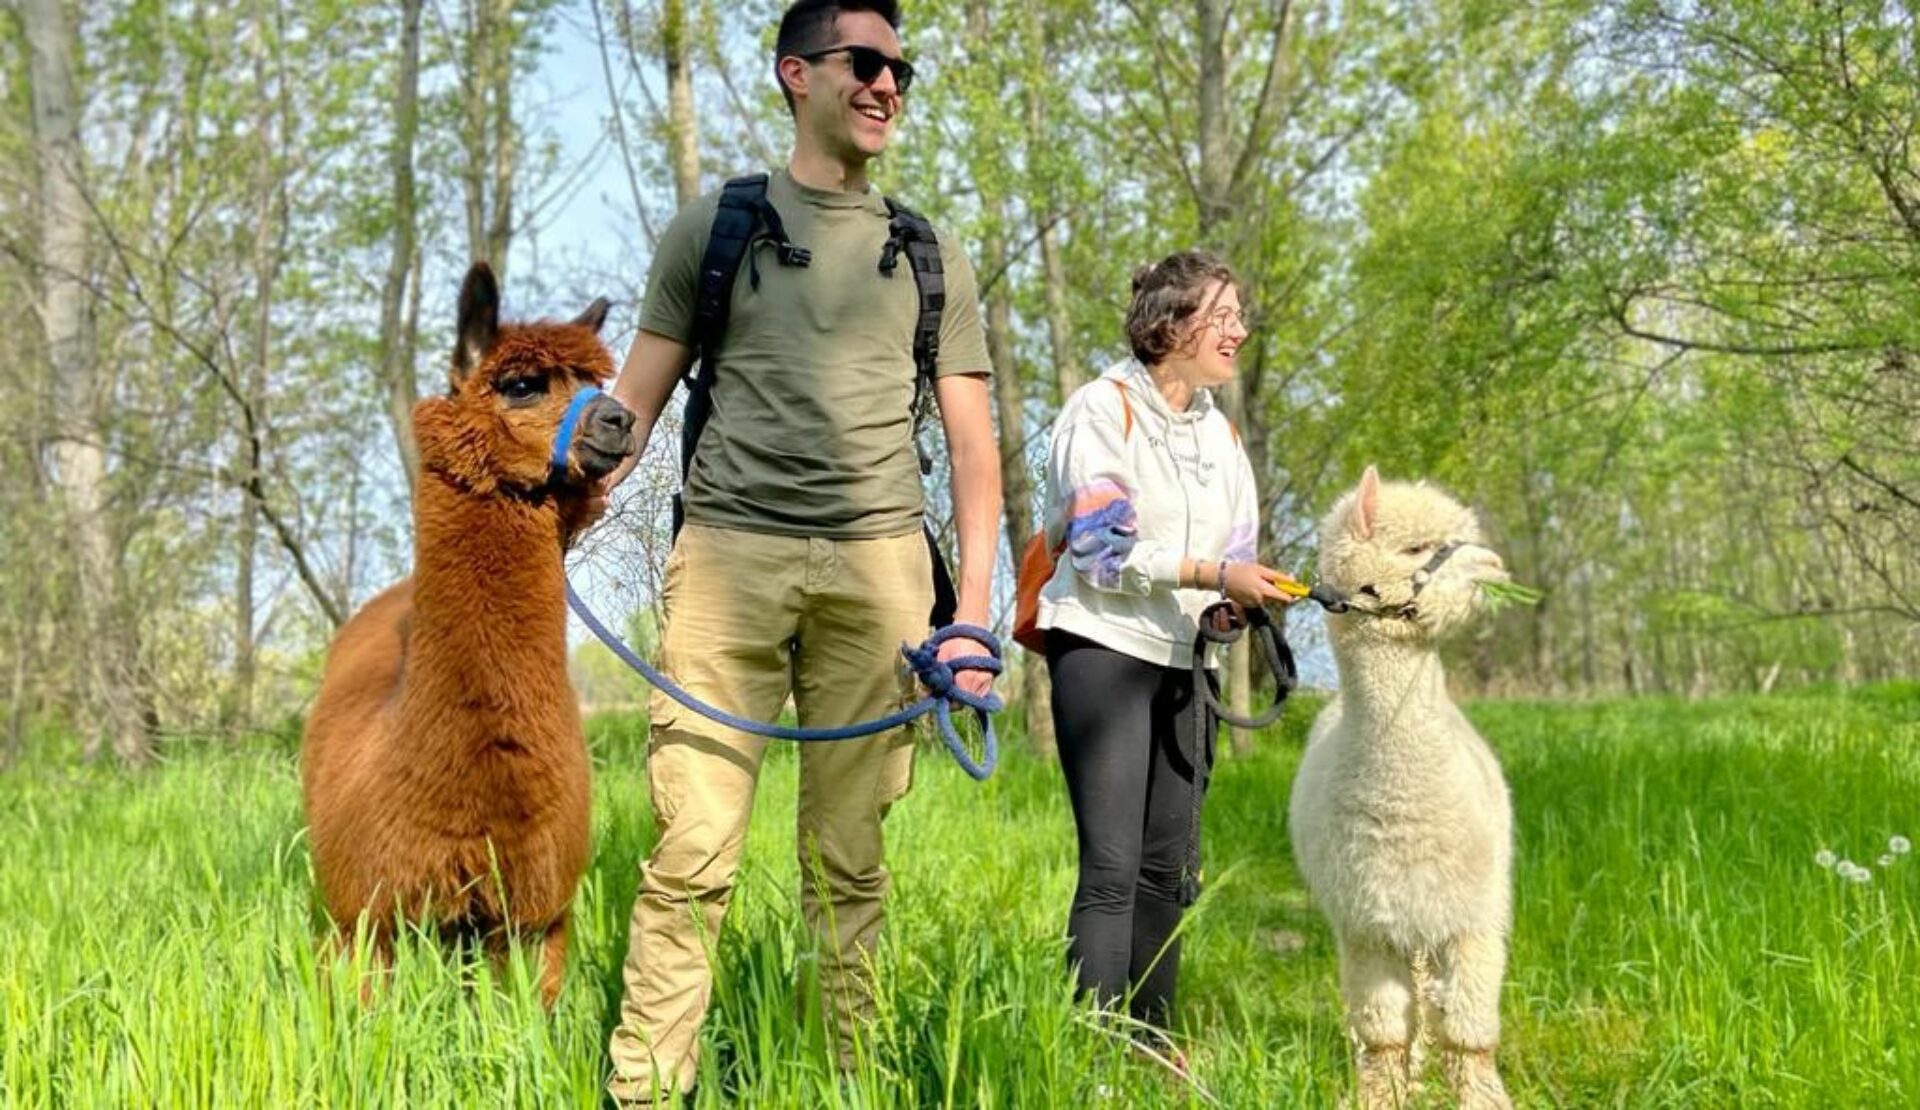 Walks with alpacas